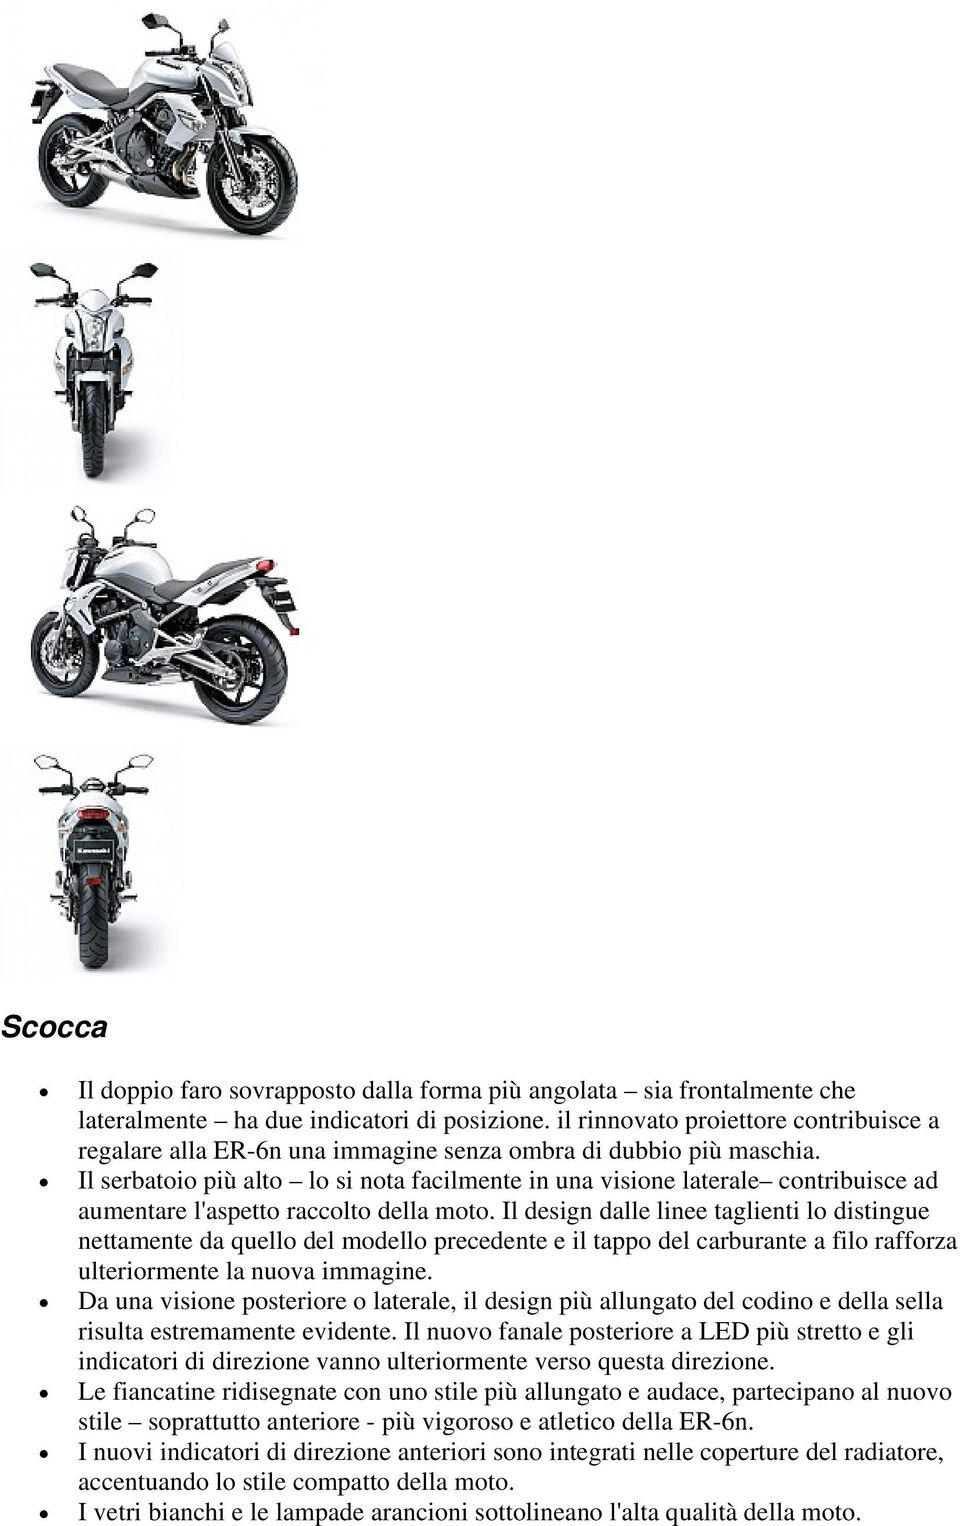 Il serbatoio più alto lo si nota facilmente in una visione laterale contribuisce ad aumentare l'aspetto raccolto della moto.